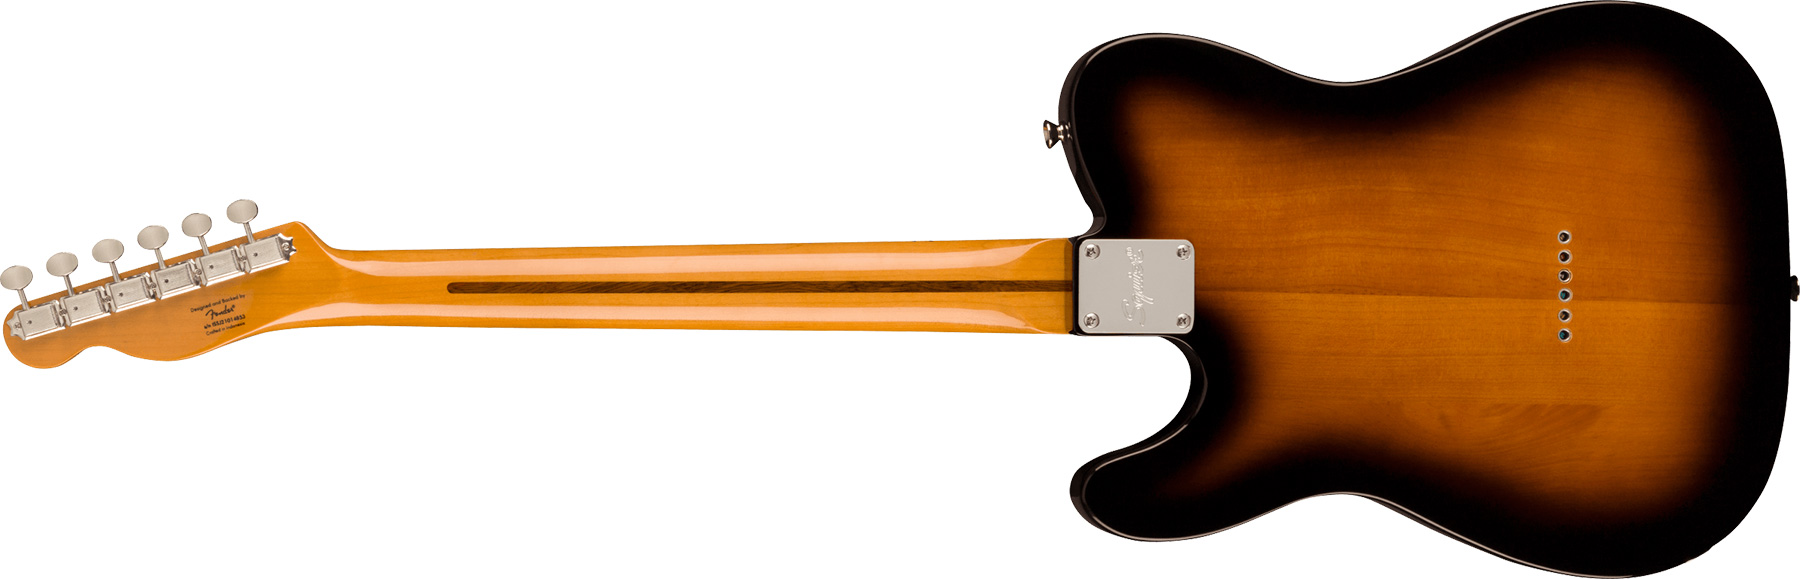 Squier Tele '50s Parchment Pickguard Classic Vibe Fsr 2s Ht Mn - 2-color Sunburst - Guitarra eléctrica con forma de tel - Variation 1